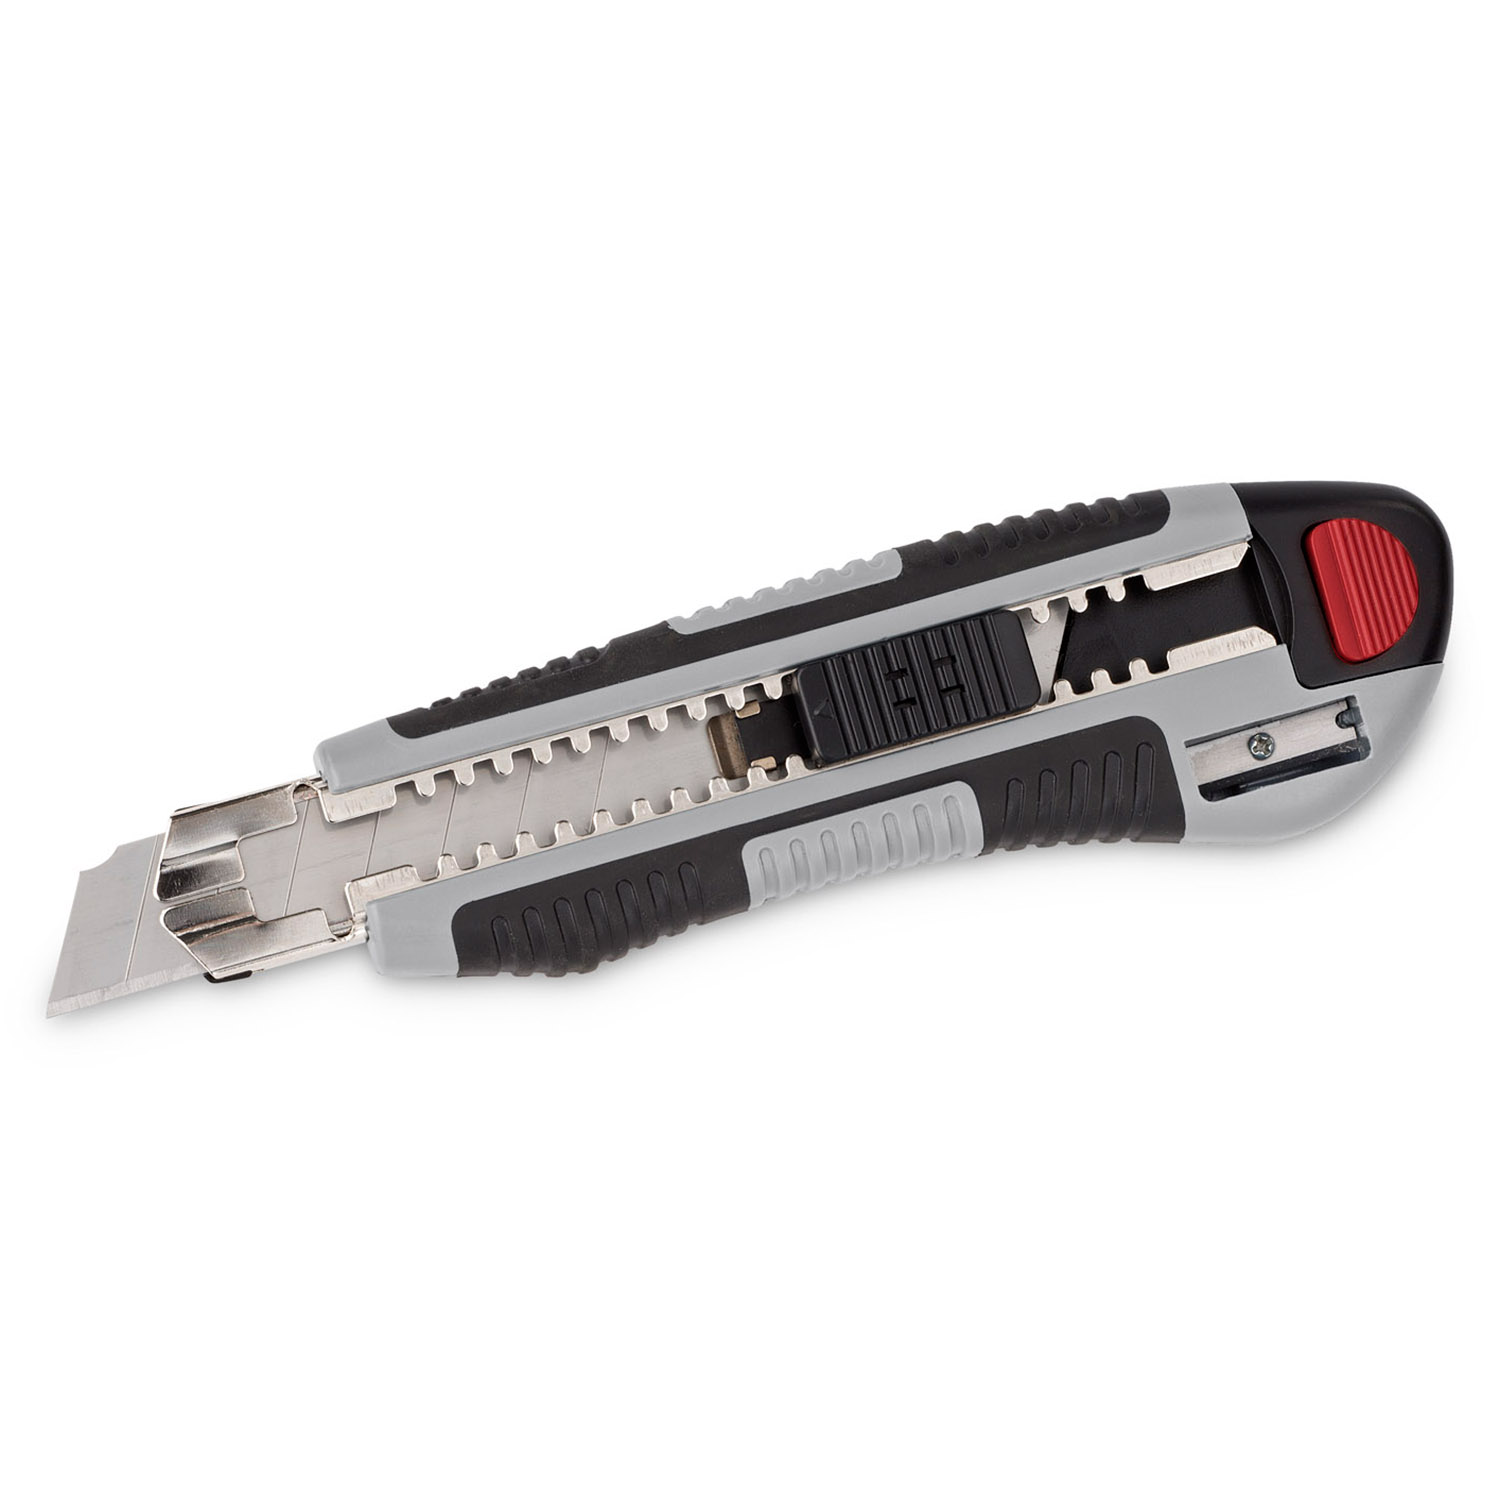 Kreator Cuttermesser 18 mm Autoload 5 Ersatzklingen - Bleistiftspitzer im Griff von VARO